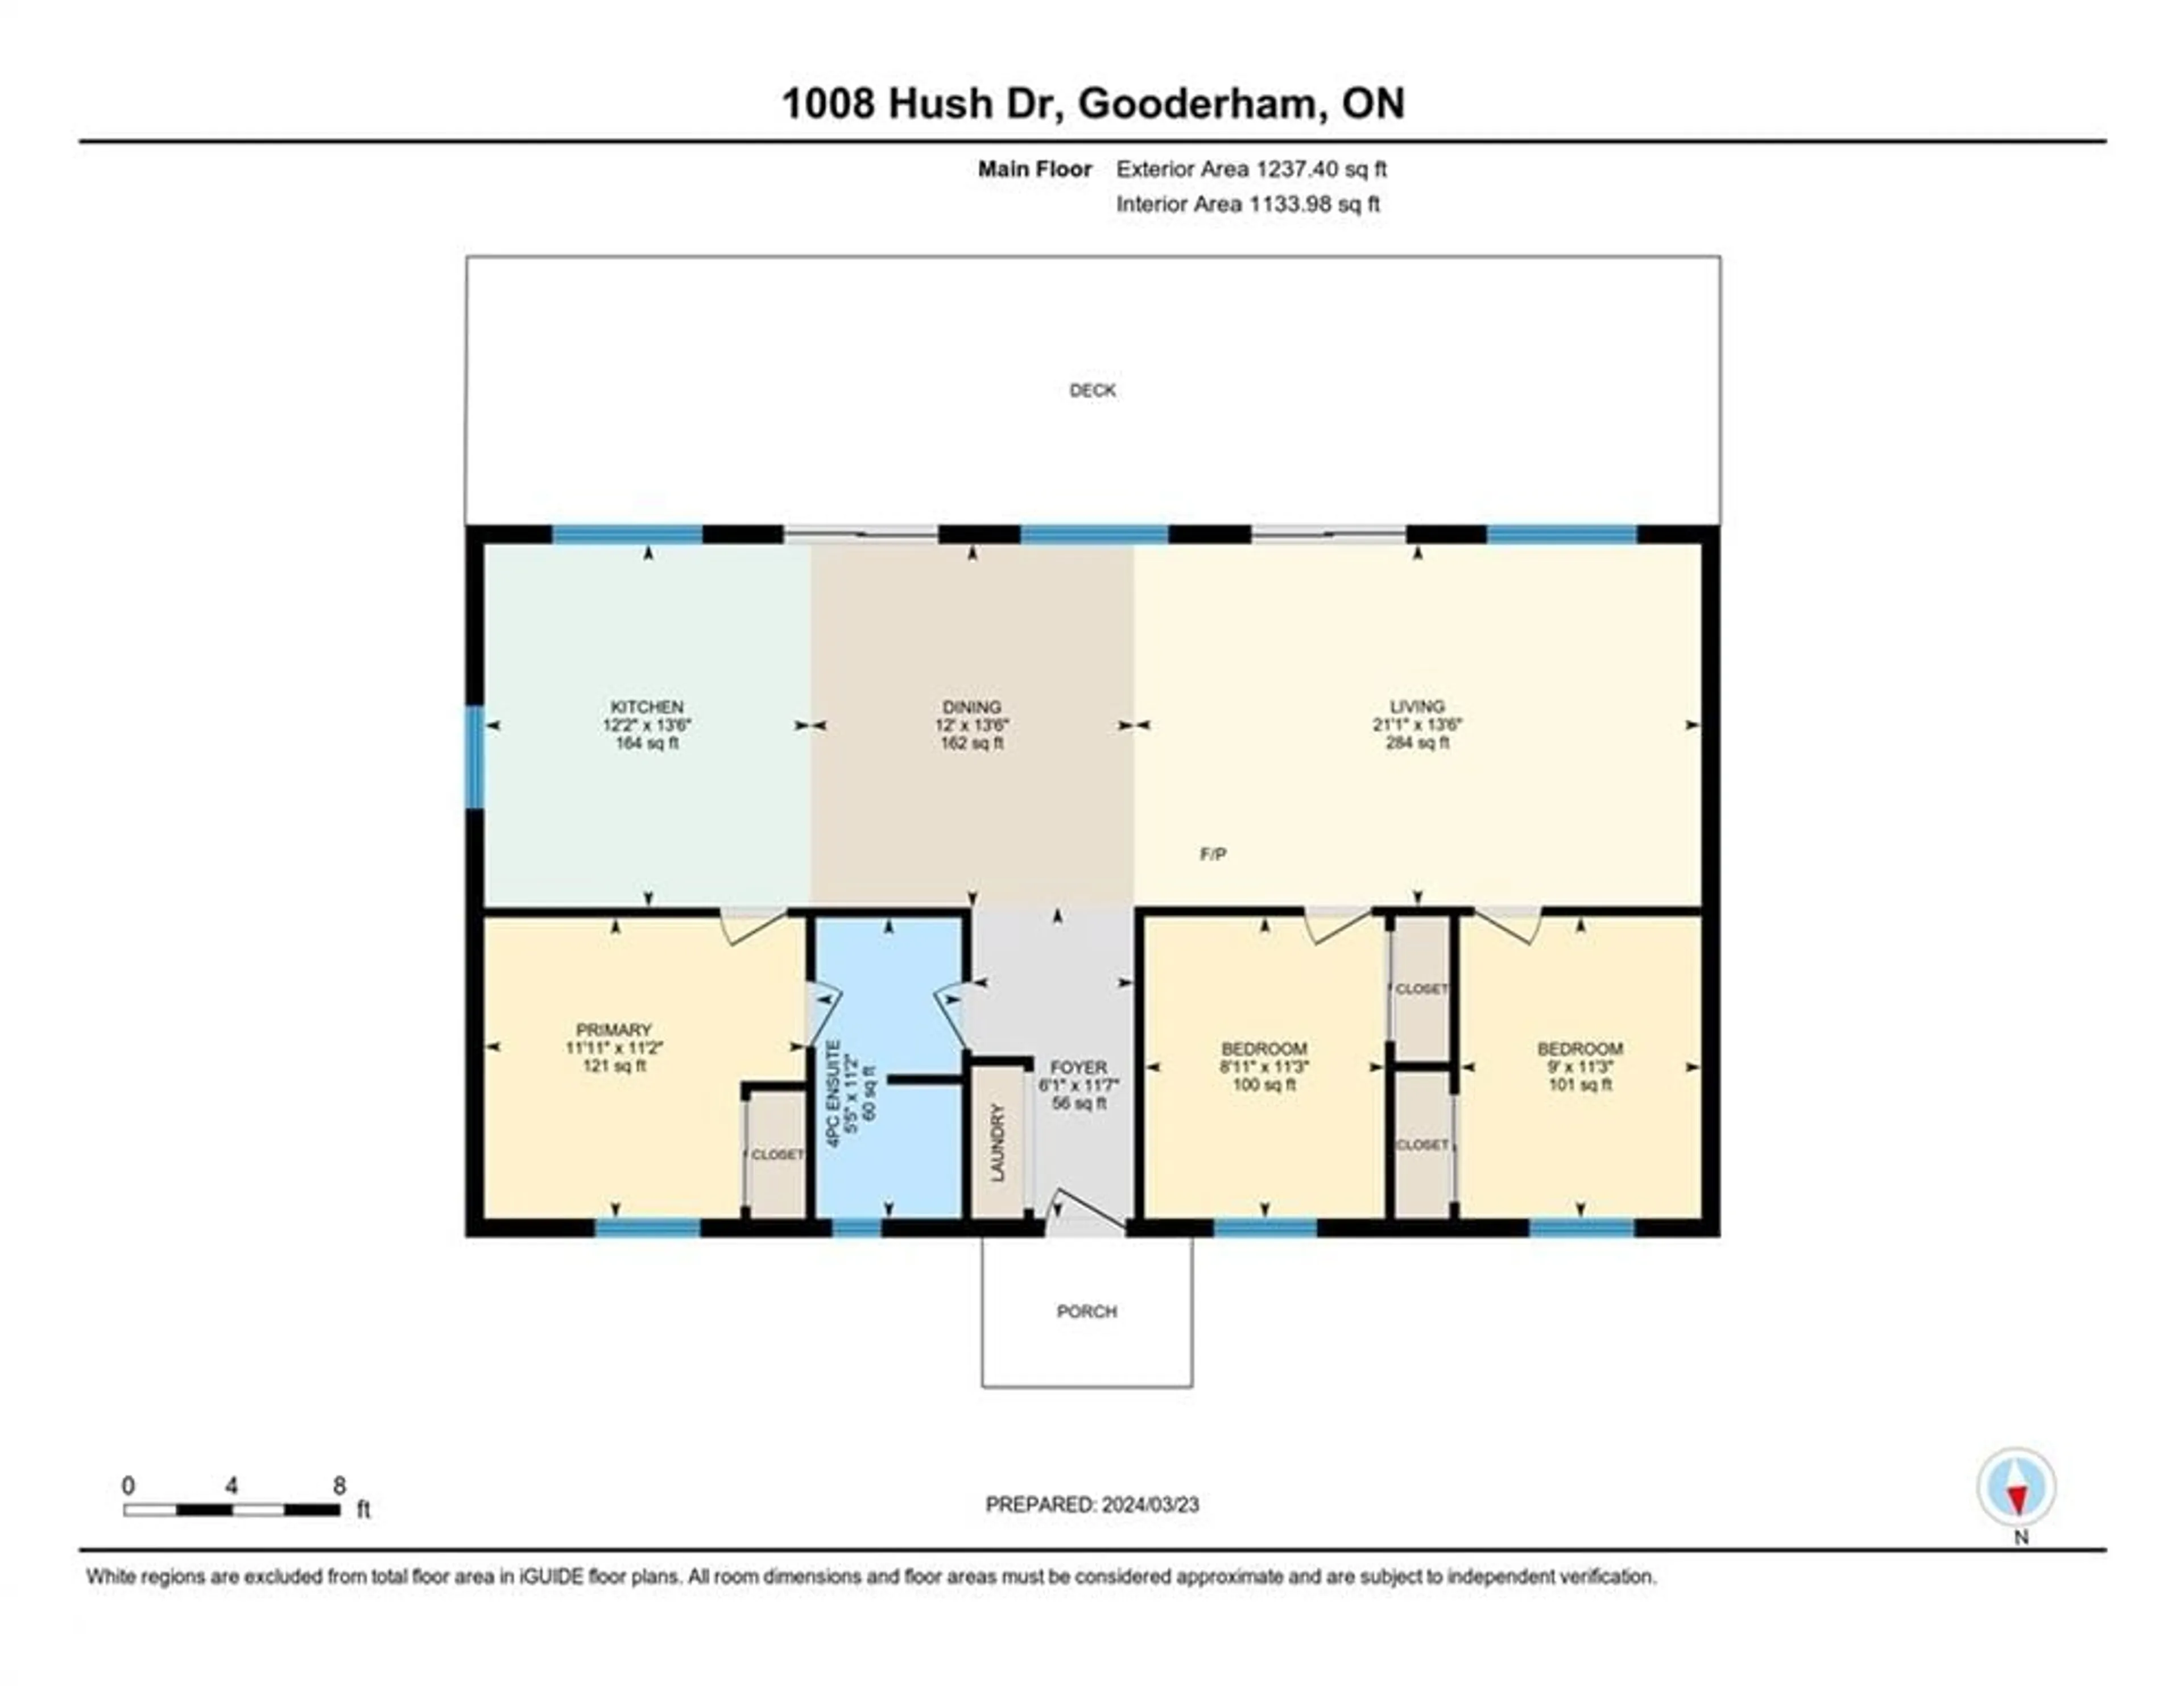 Floor plan for 1008 Hush Dr, Gooderham Ontario K0M 1R0